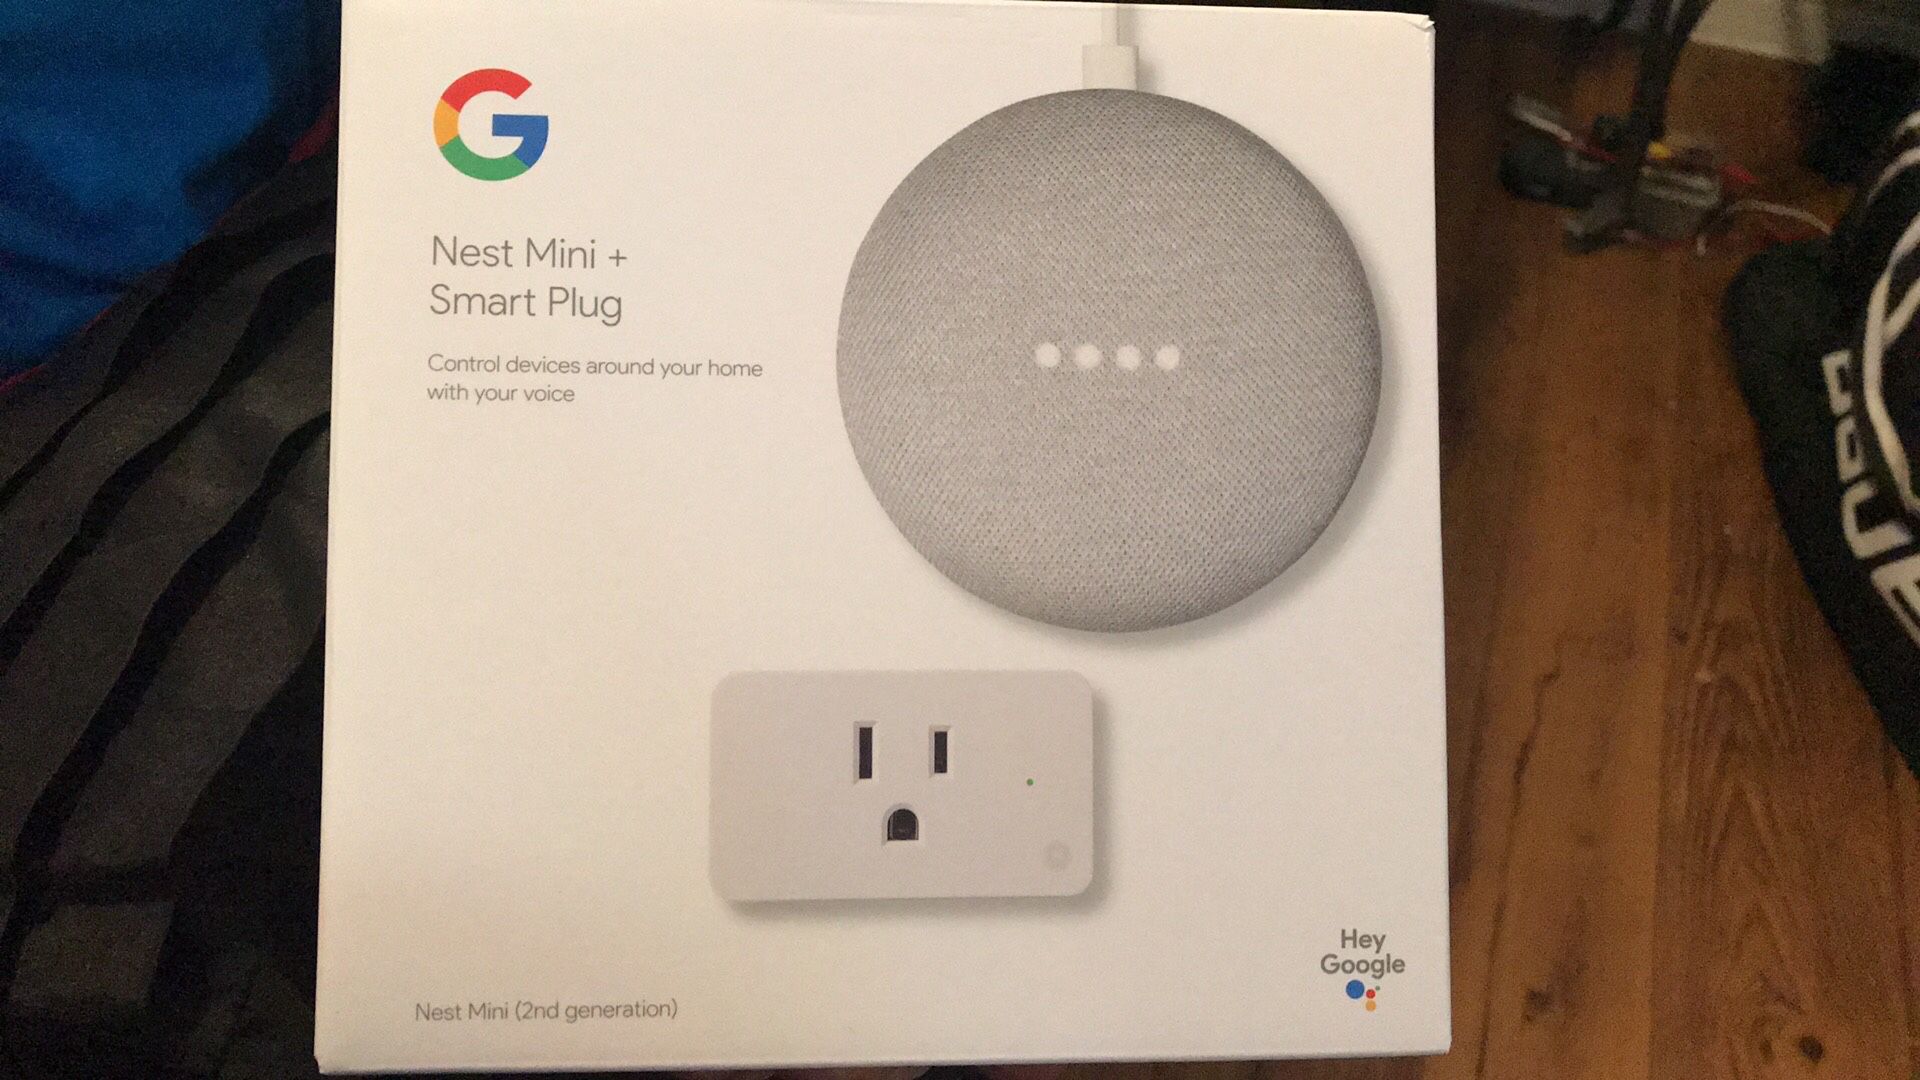 Google nest and Smart Plug